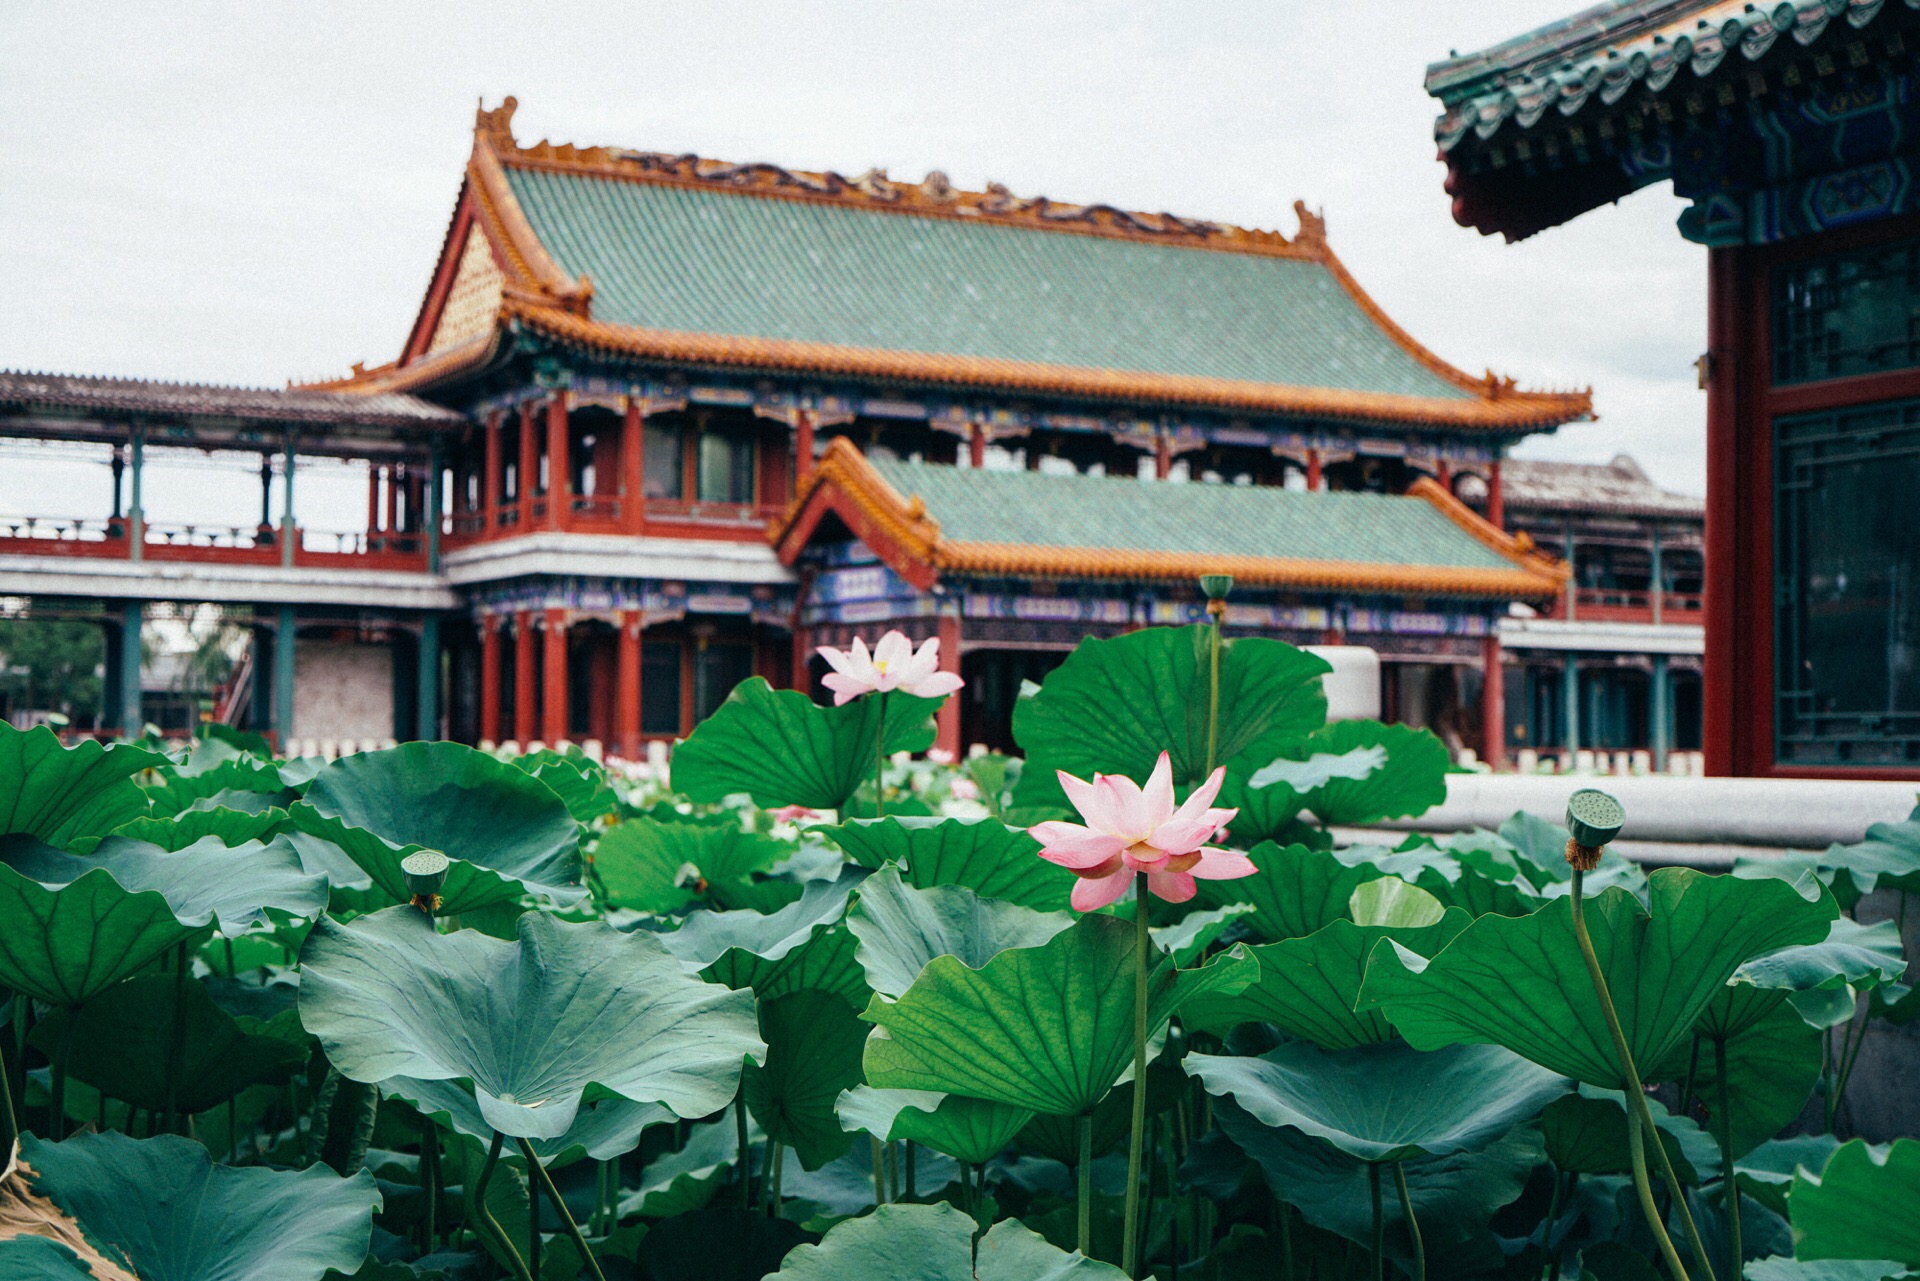 龙潭湖公园位于北京南二环。 每年7月初，特别适合赏荷花。 荷花池有两处，一处是龙吟阁景区，位于公园西